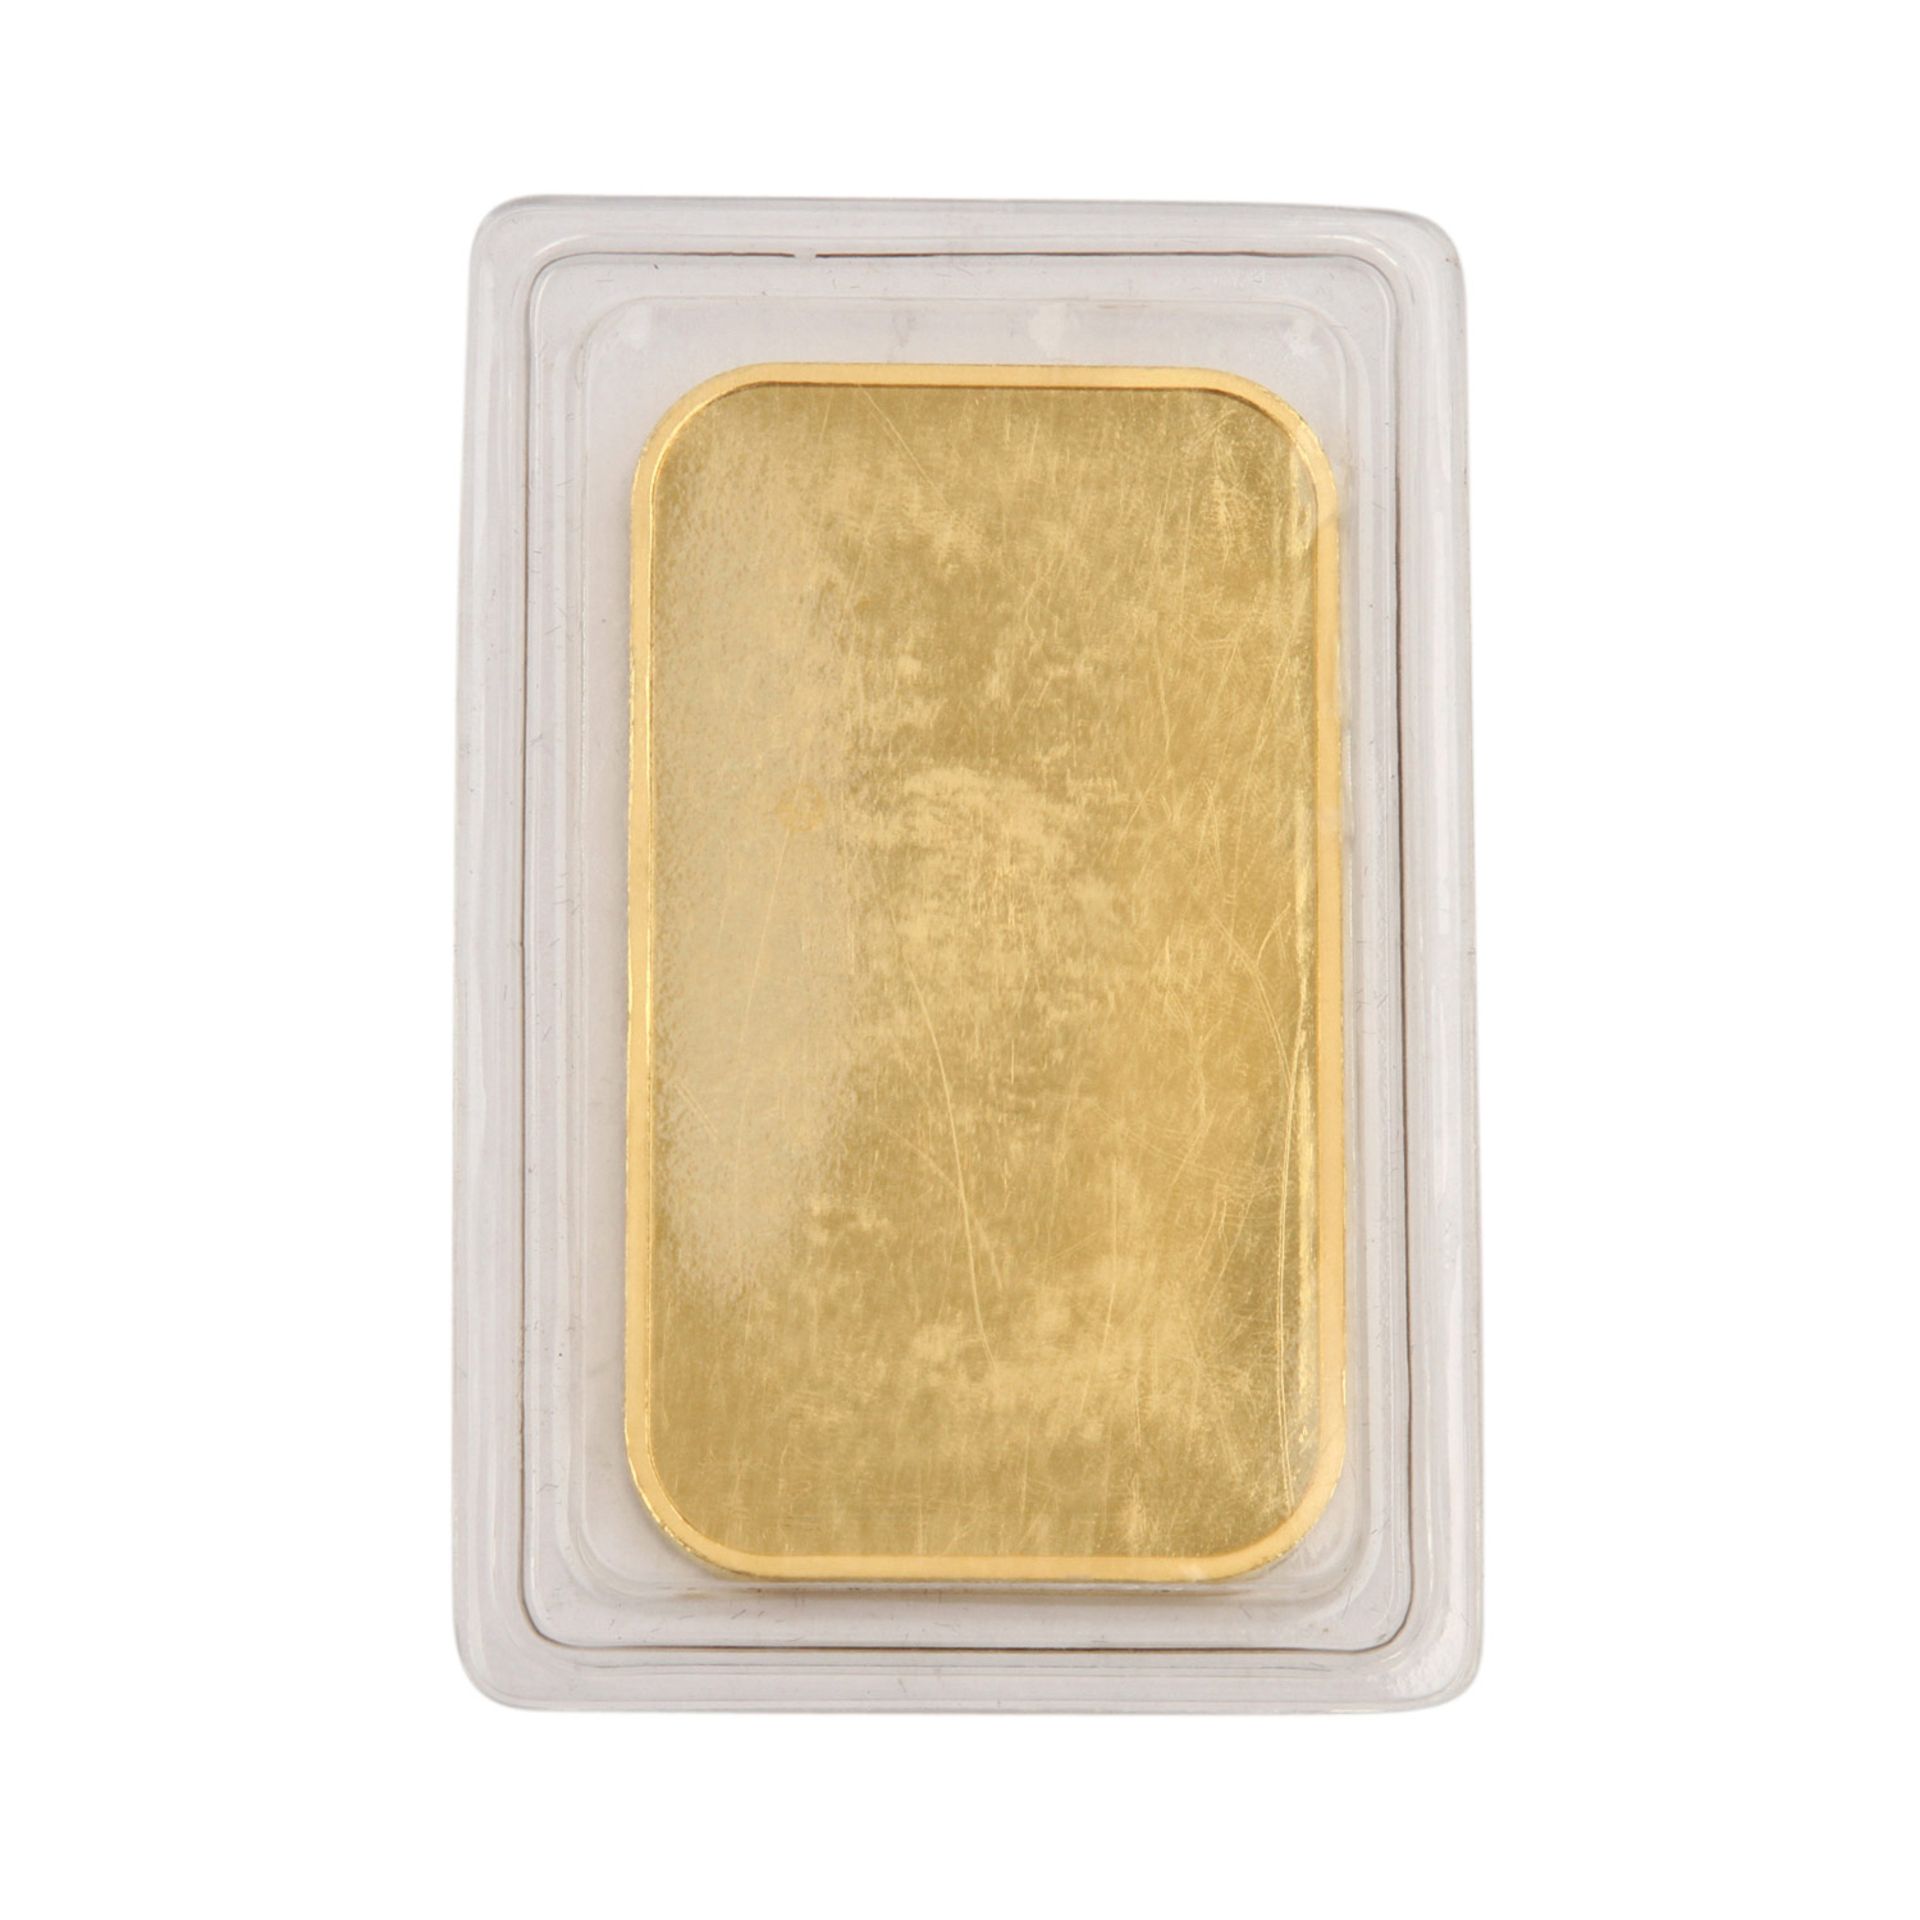 50g Goldbarren - 50g GOLD fein, geprägter Goldbarren von CM SA Suisse, eingeschweißt. - Bild 2 aus 2